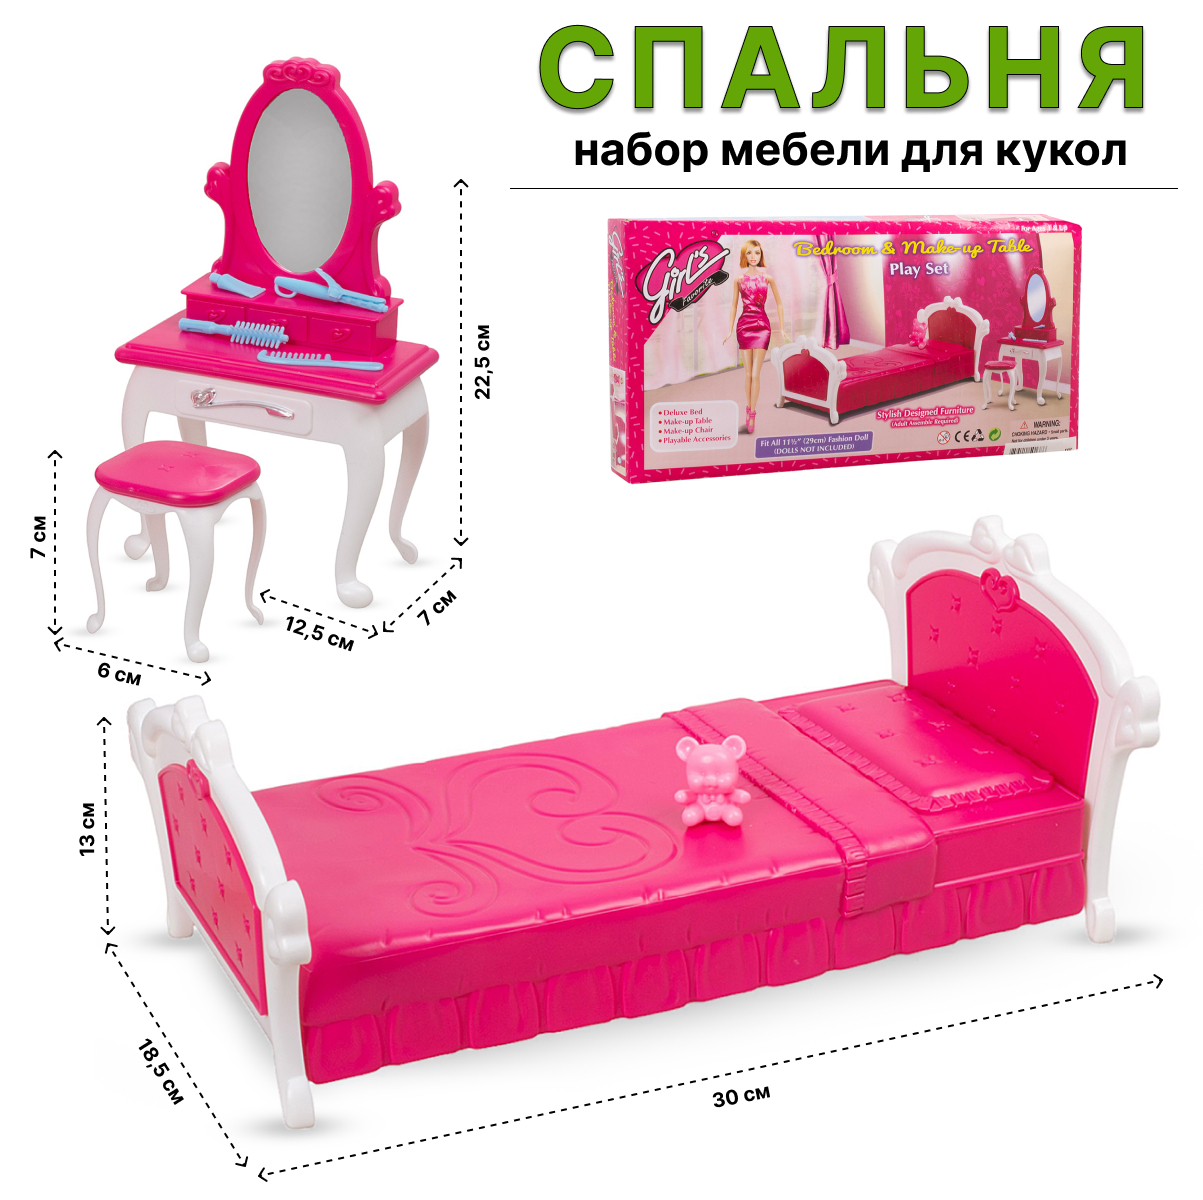 Игровой набор Tongde мебели для кукол 3014 Спальня игрушечная мебель viga спальня в коробке 44035